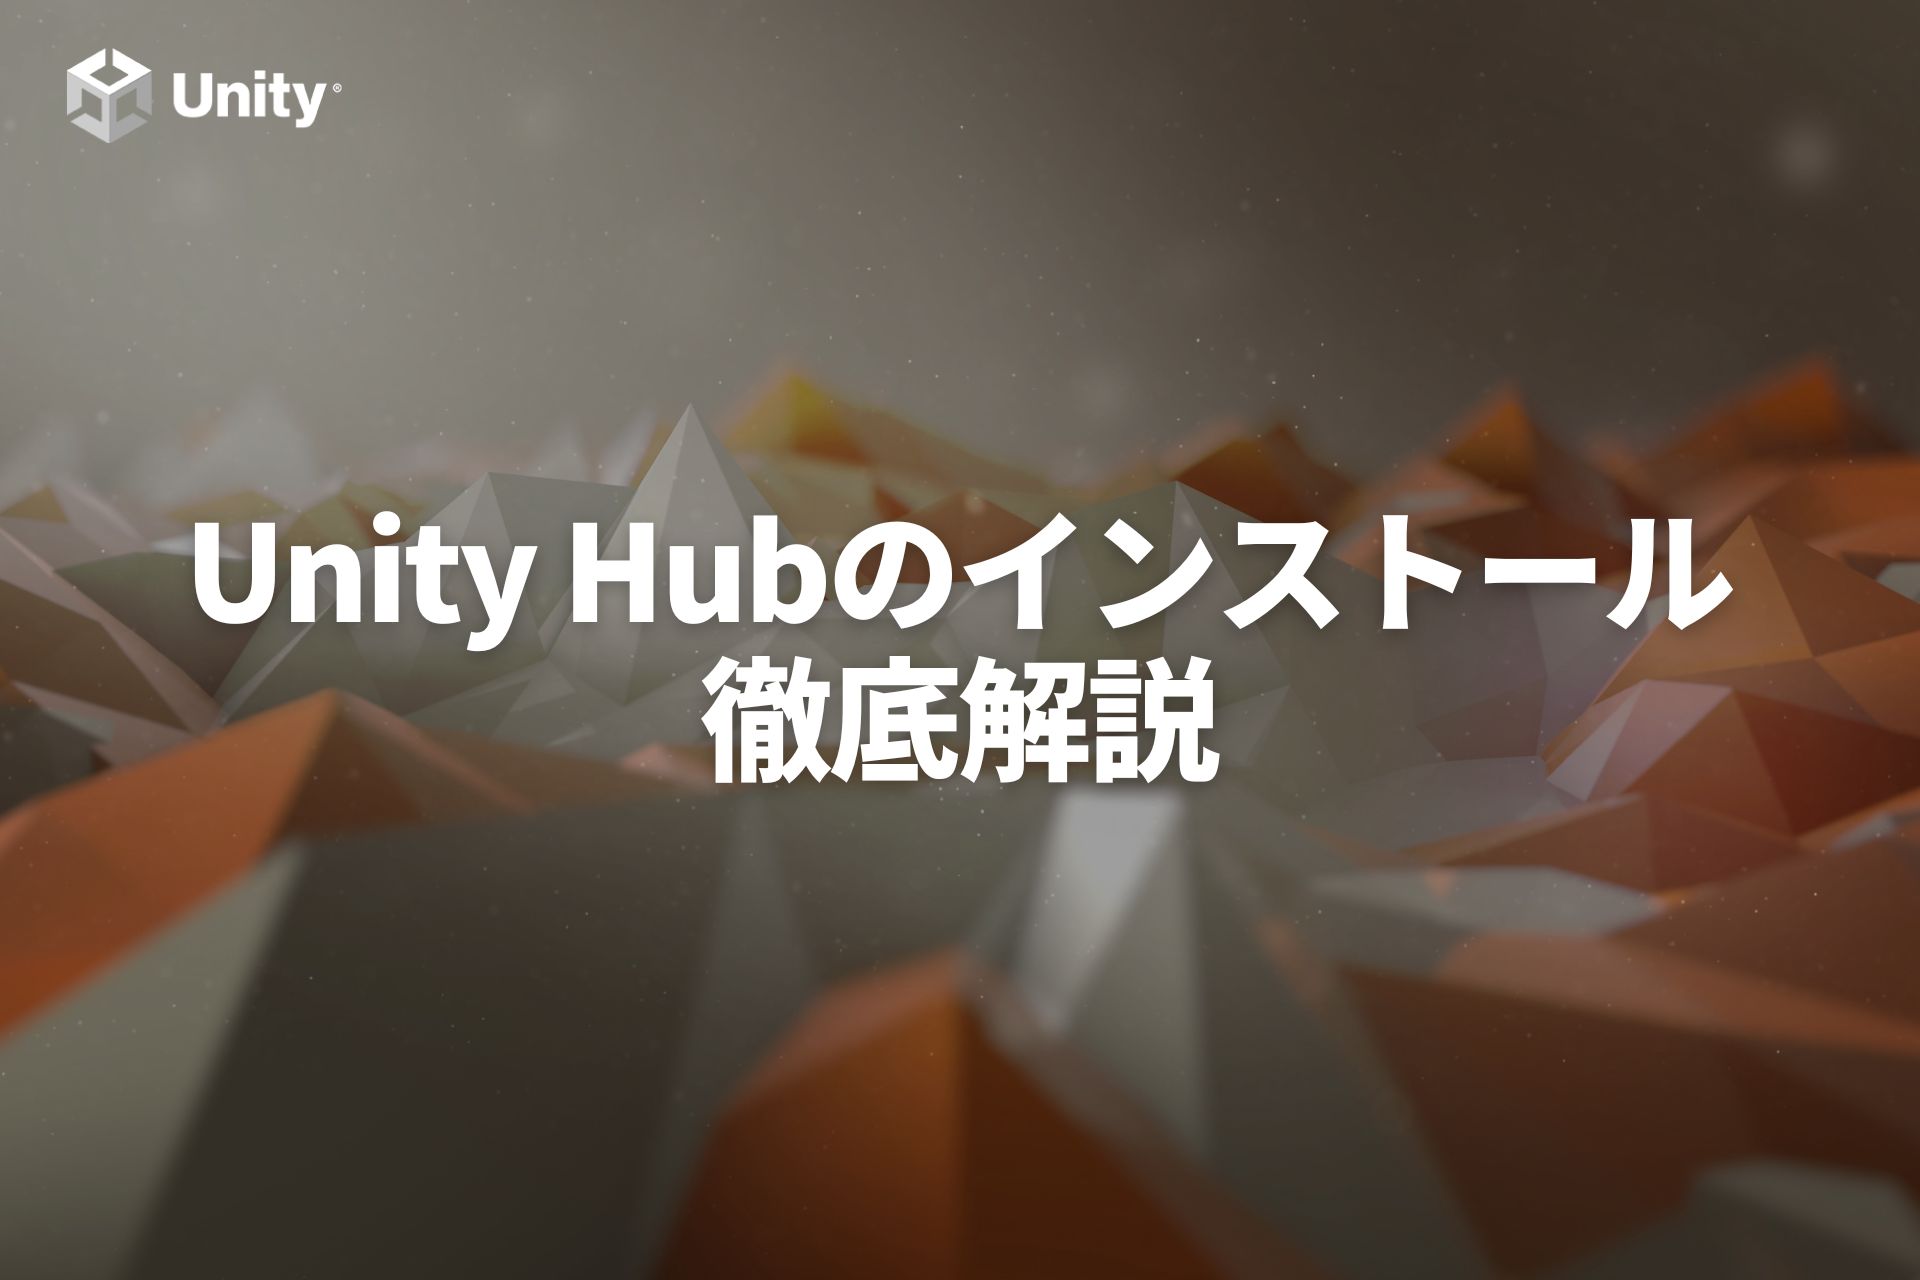 【Unity入門】Unity Hubのインストールからセットアップまで徹底解説